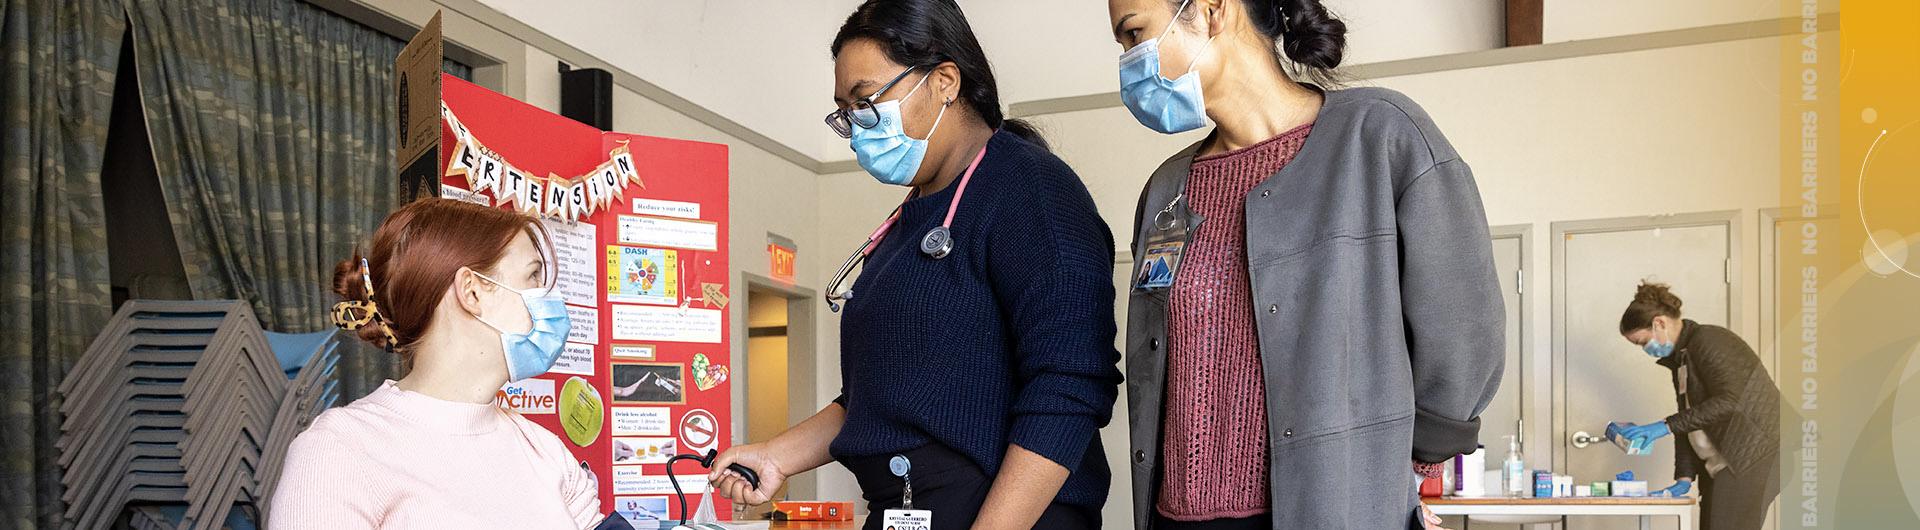 student nurse takes blood pressure